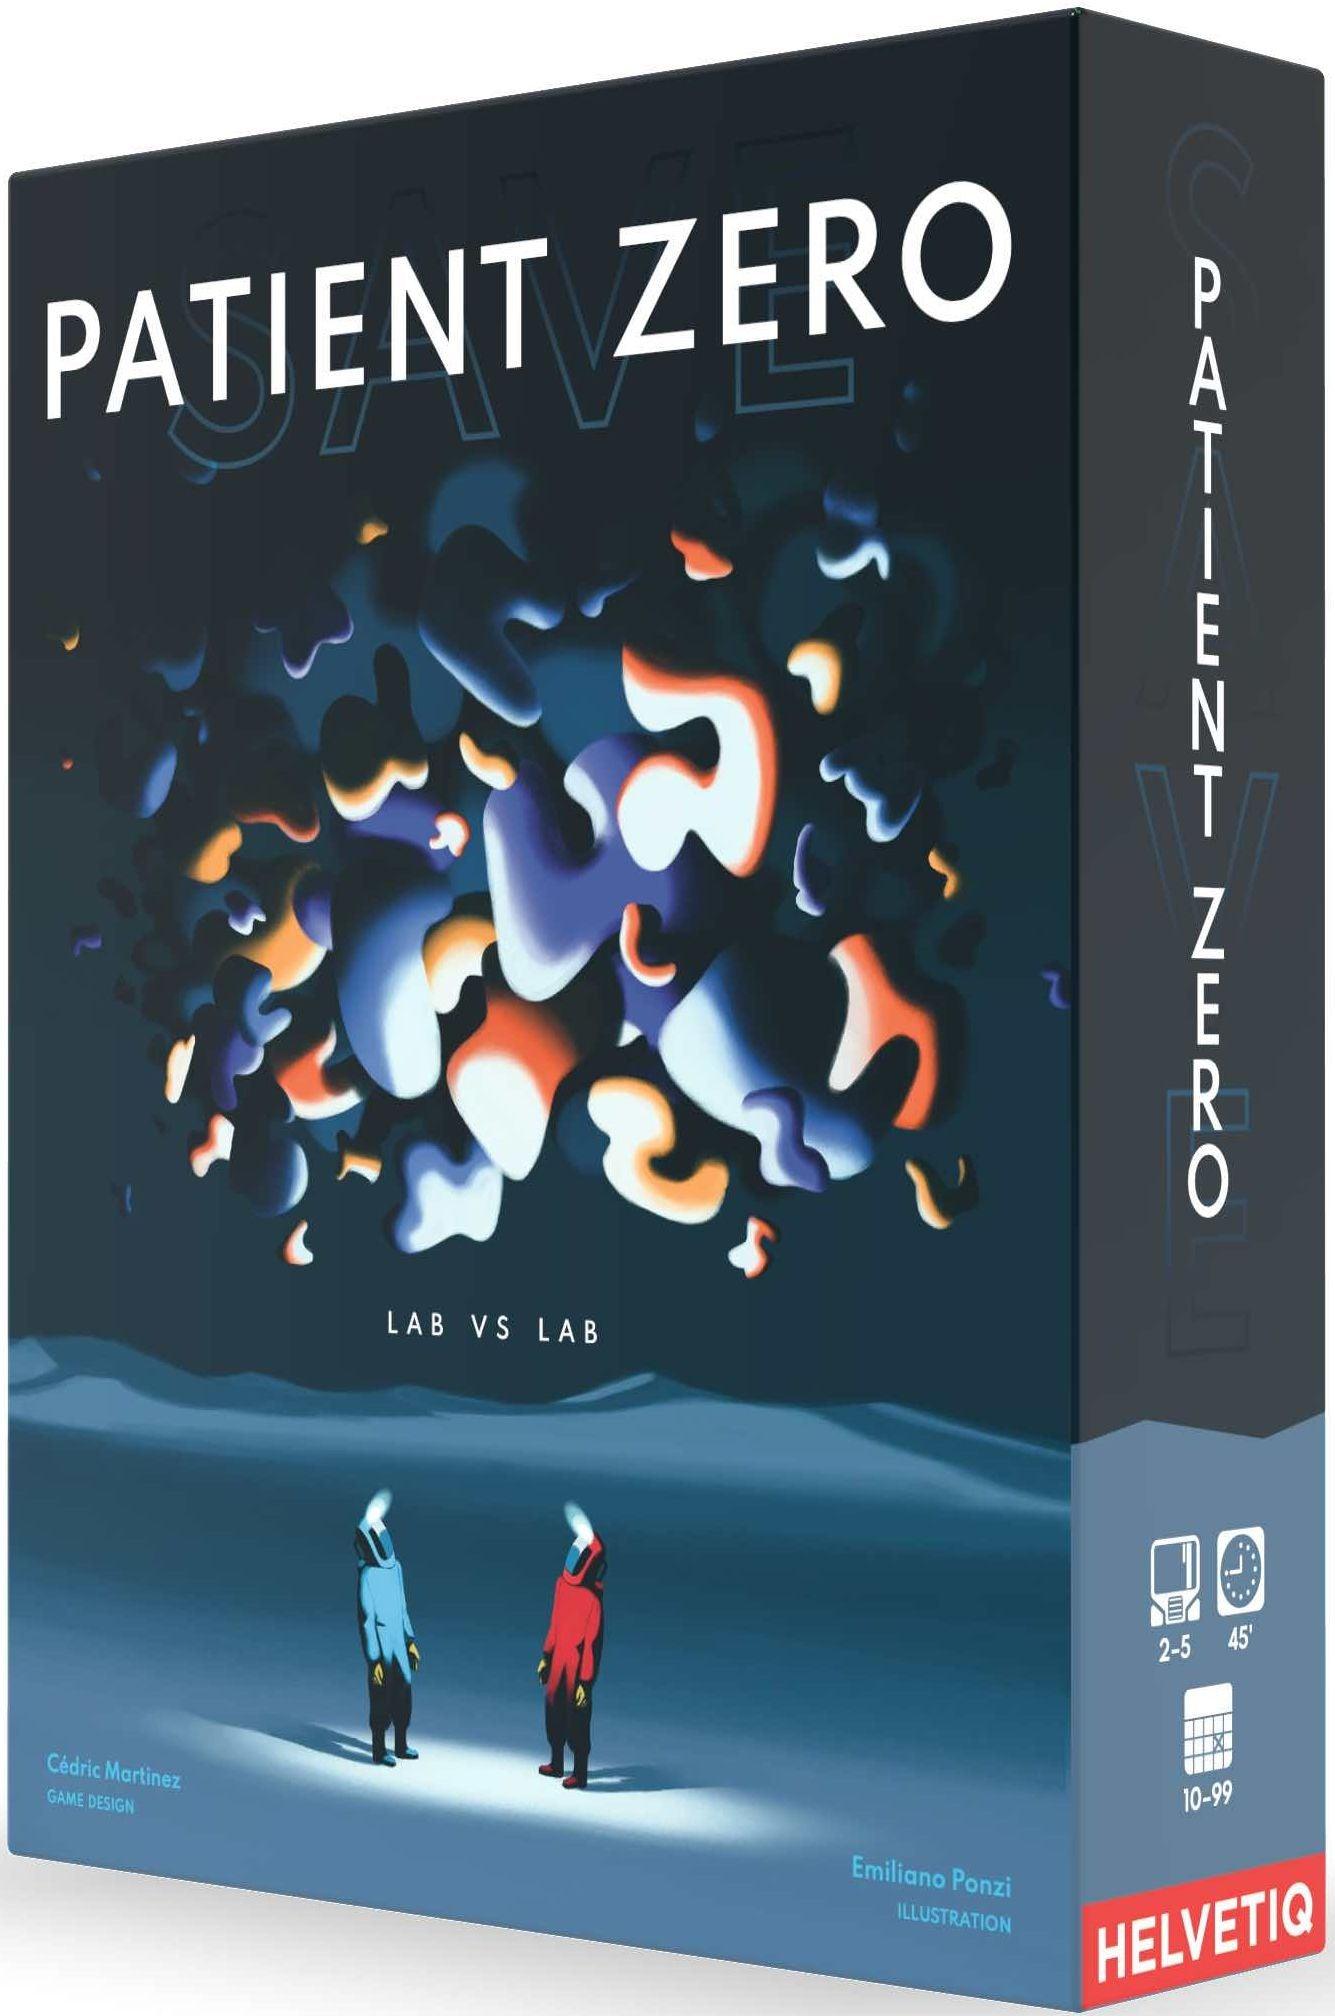 VR-92382 Save Patient Zero - Helvetiq - Titan Pop Culture